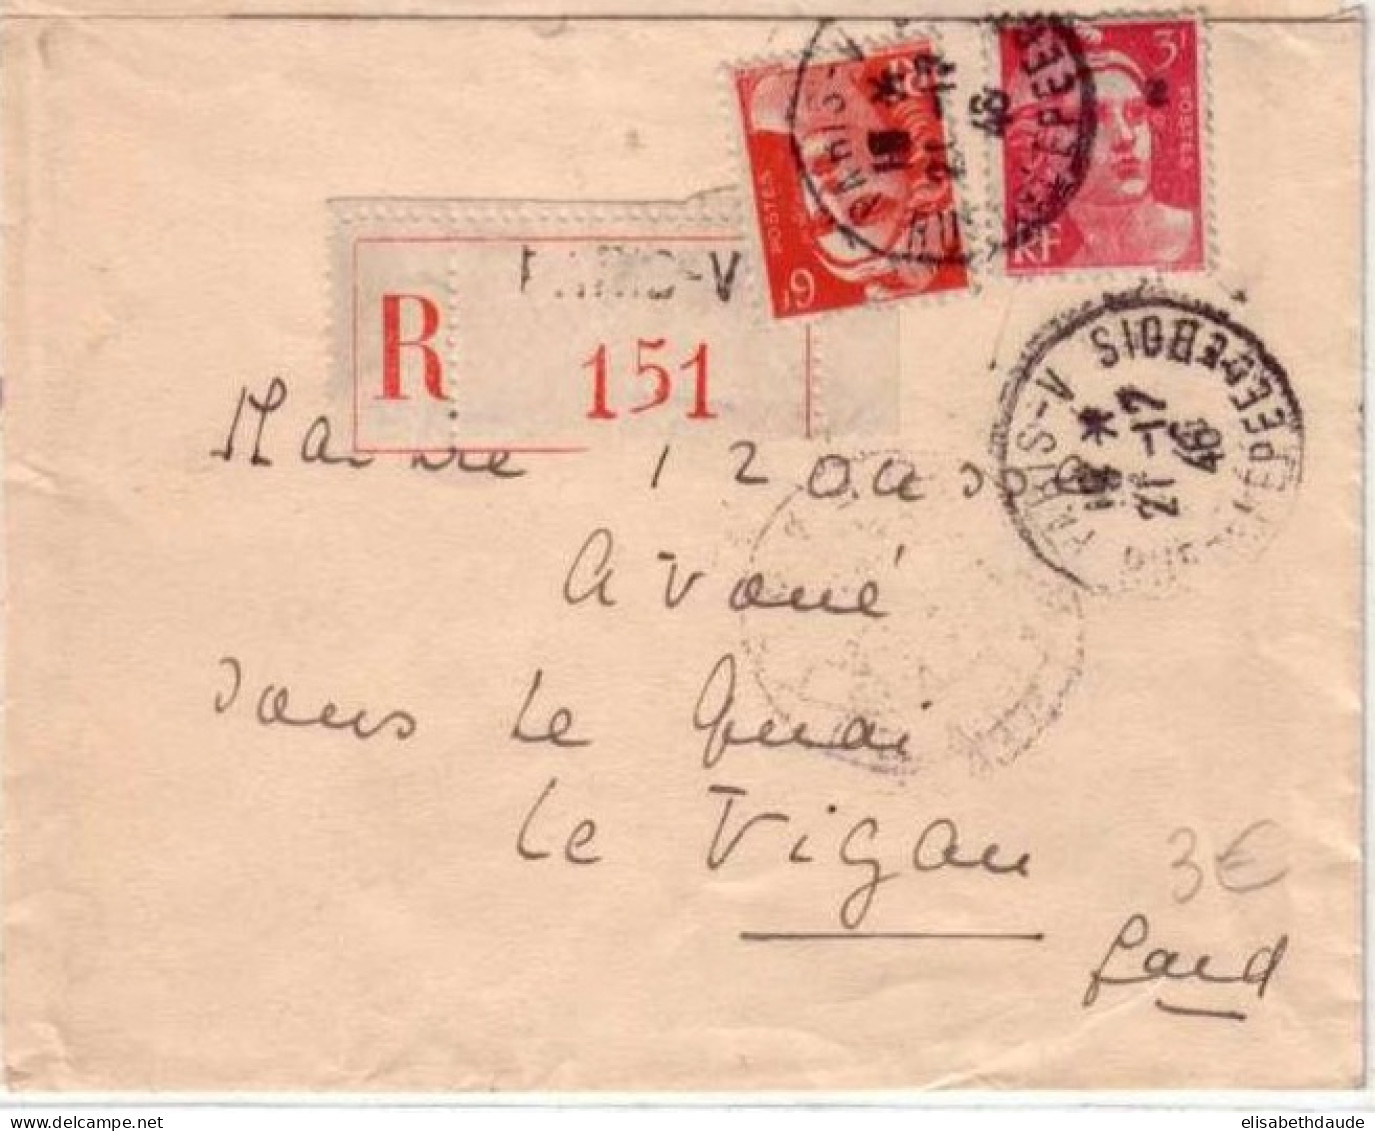 GANDON -Yvert N° 721+716 Sur LETTRE RECOMMANDEE De PARIS (V) Pour LE VIGAN (GARD) -1946 - 1945-54 Marianne De Gandon